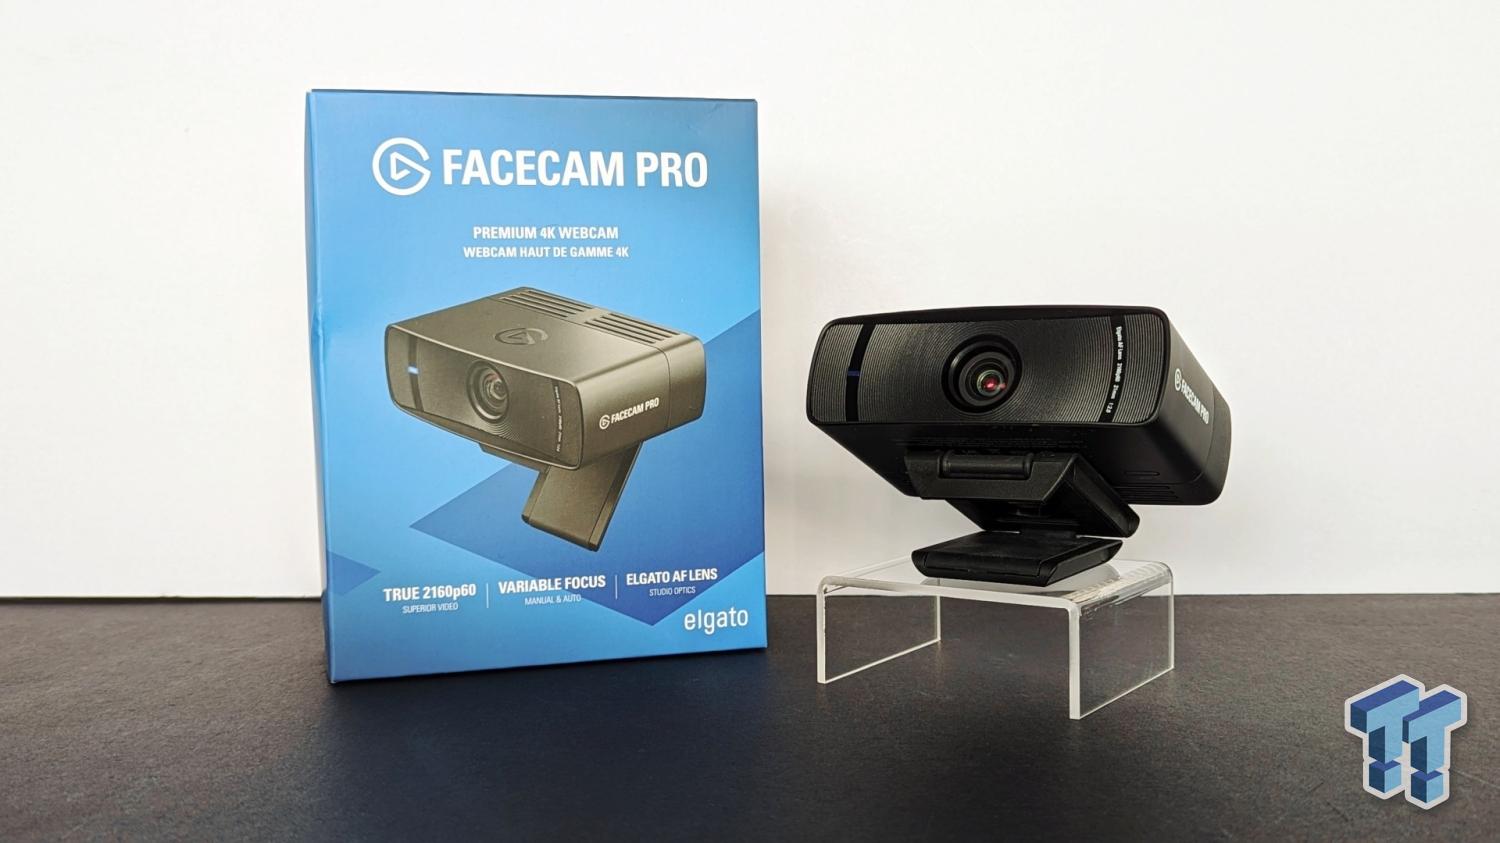 Facecam Pro